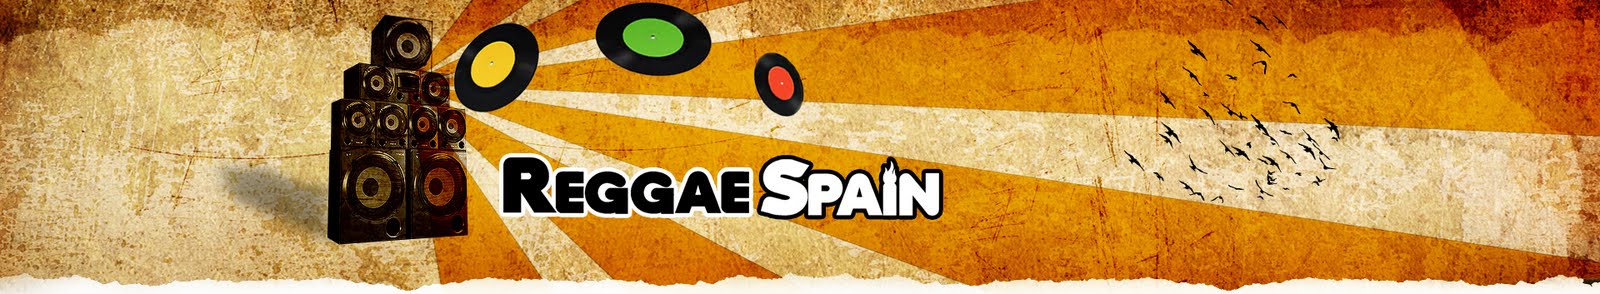 Reggae Spain